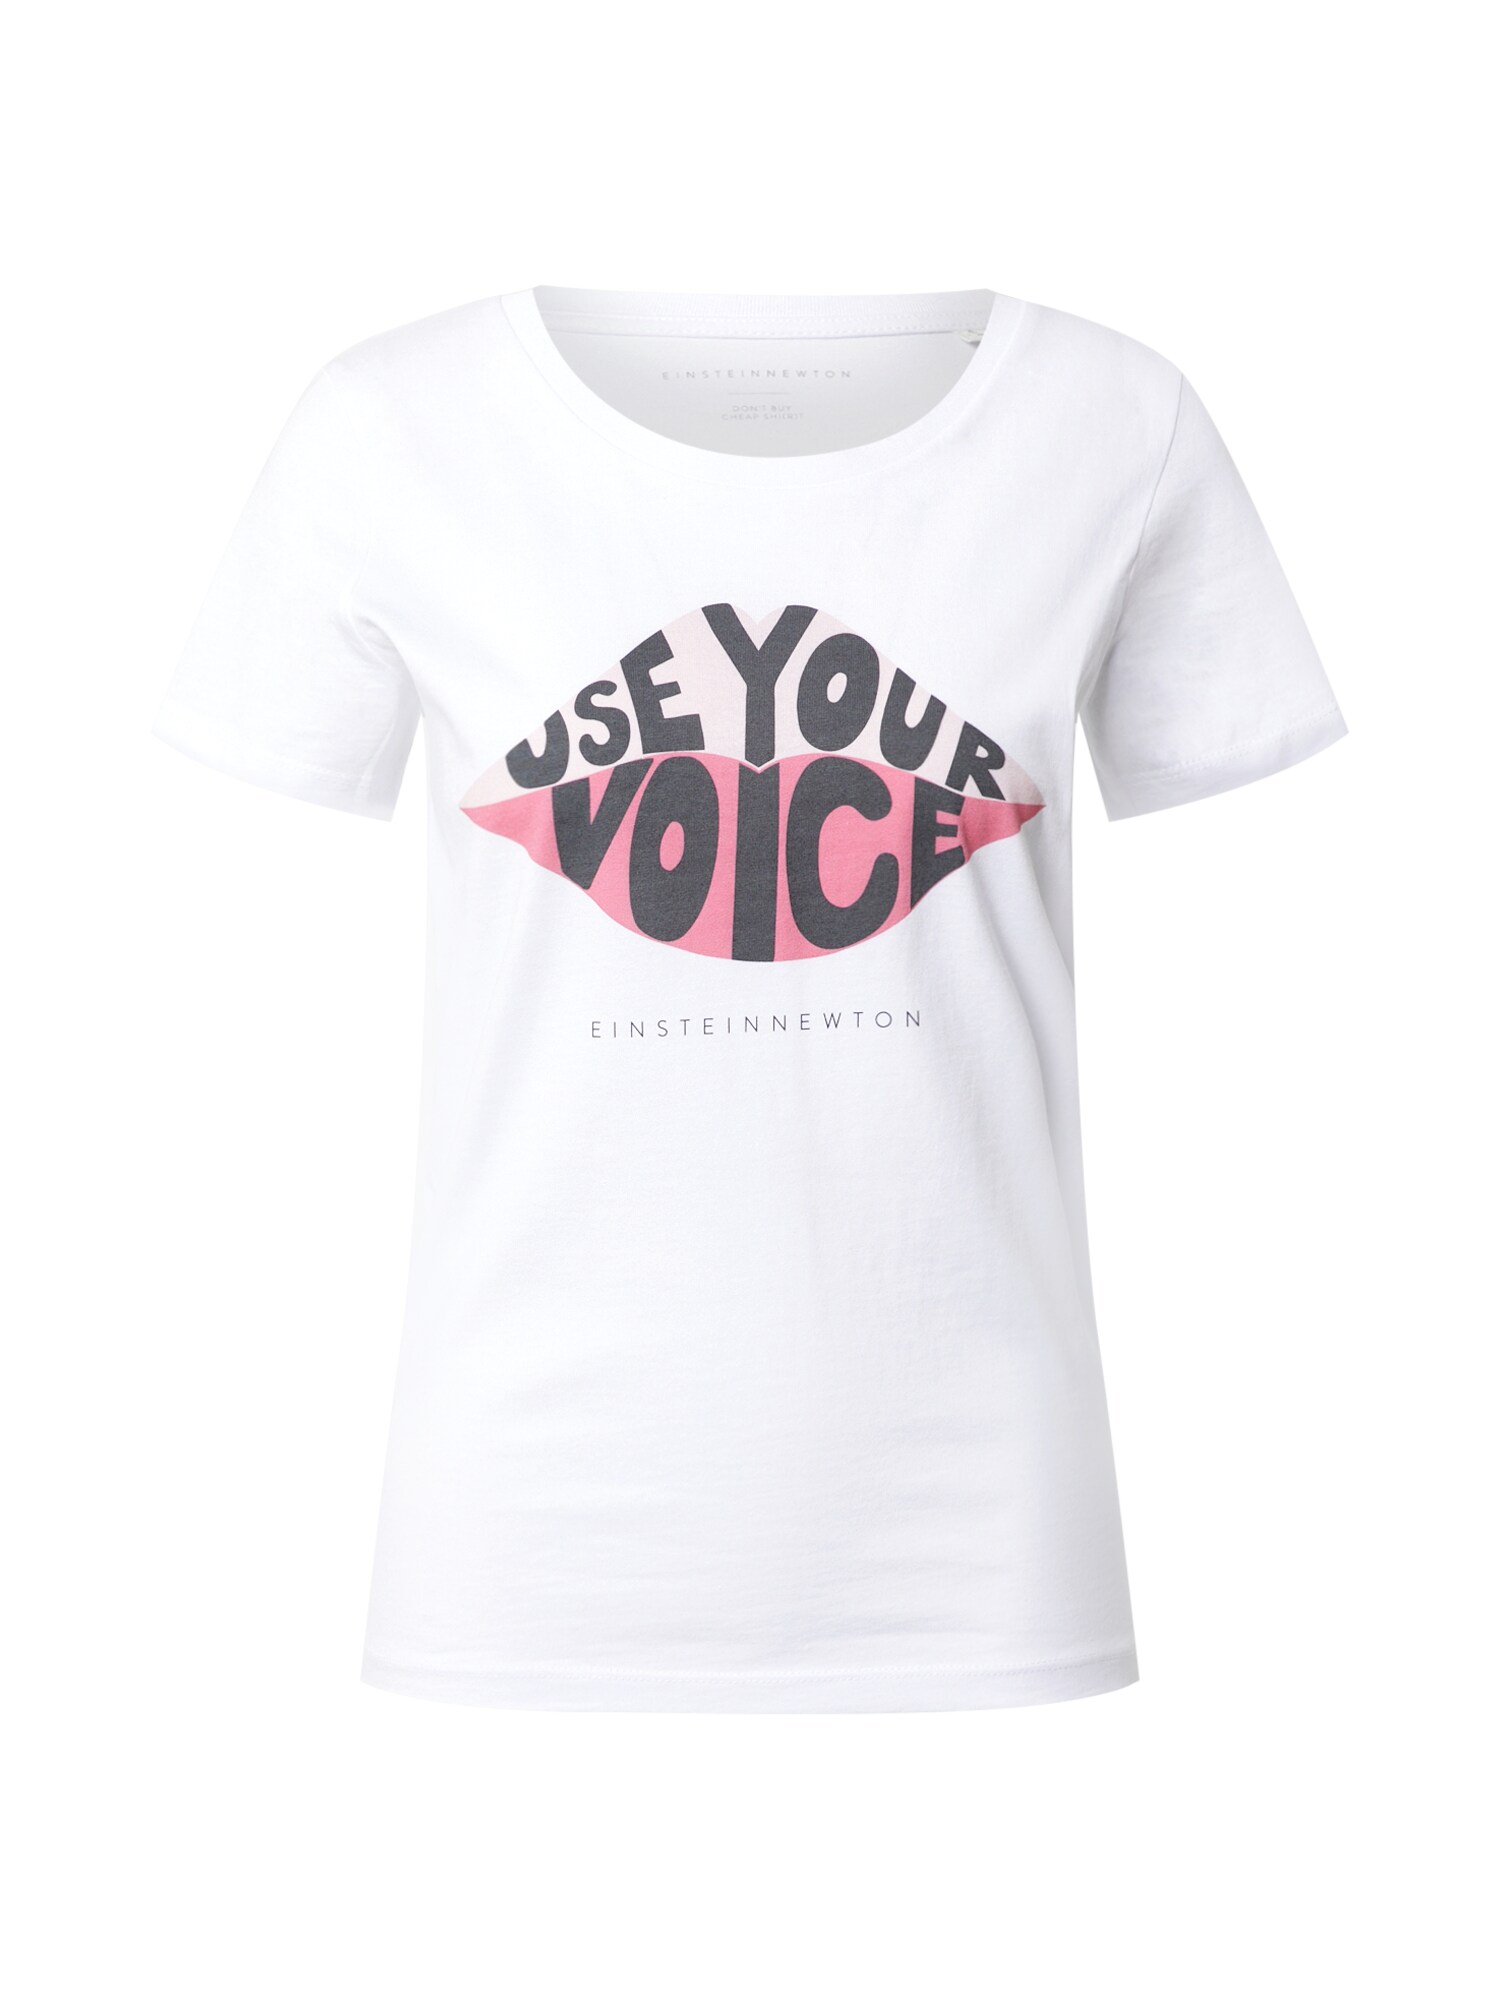 EINSTEIN & NEWTON Marškinėliai 'Voice'  balta / rožinė